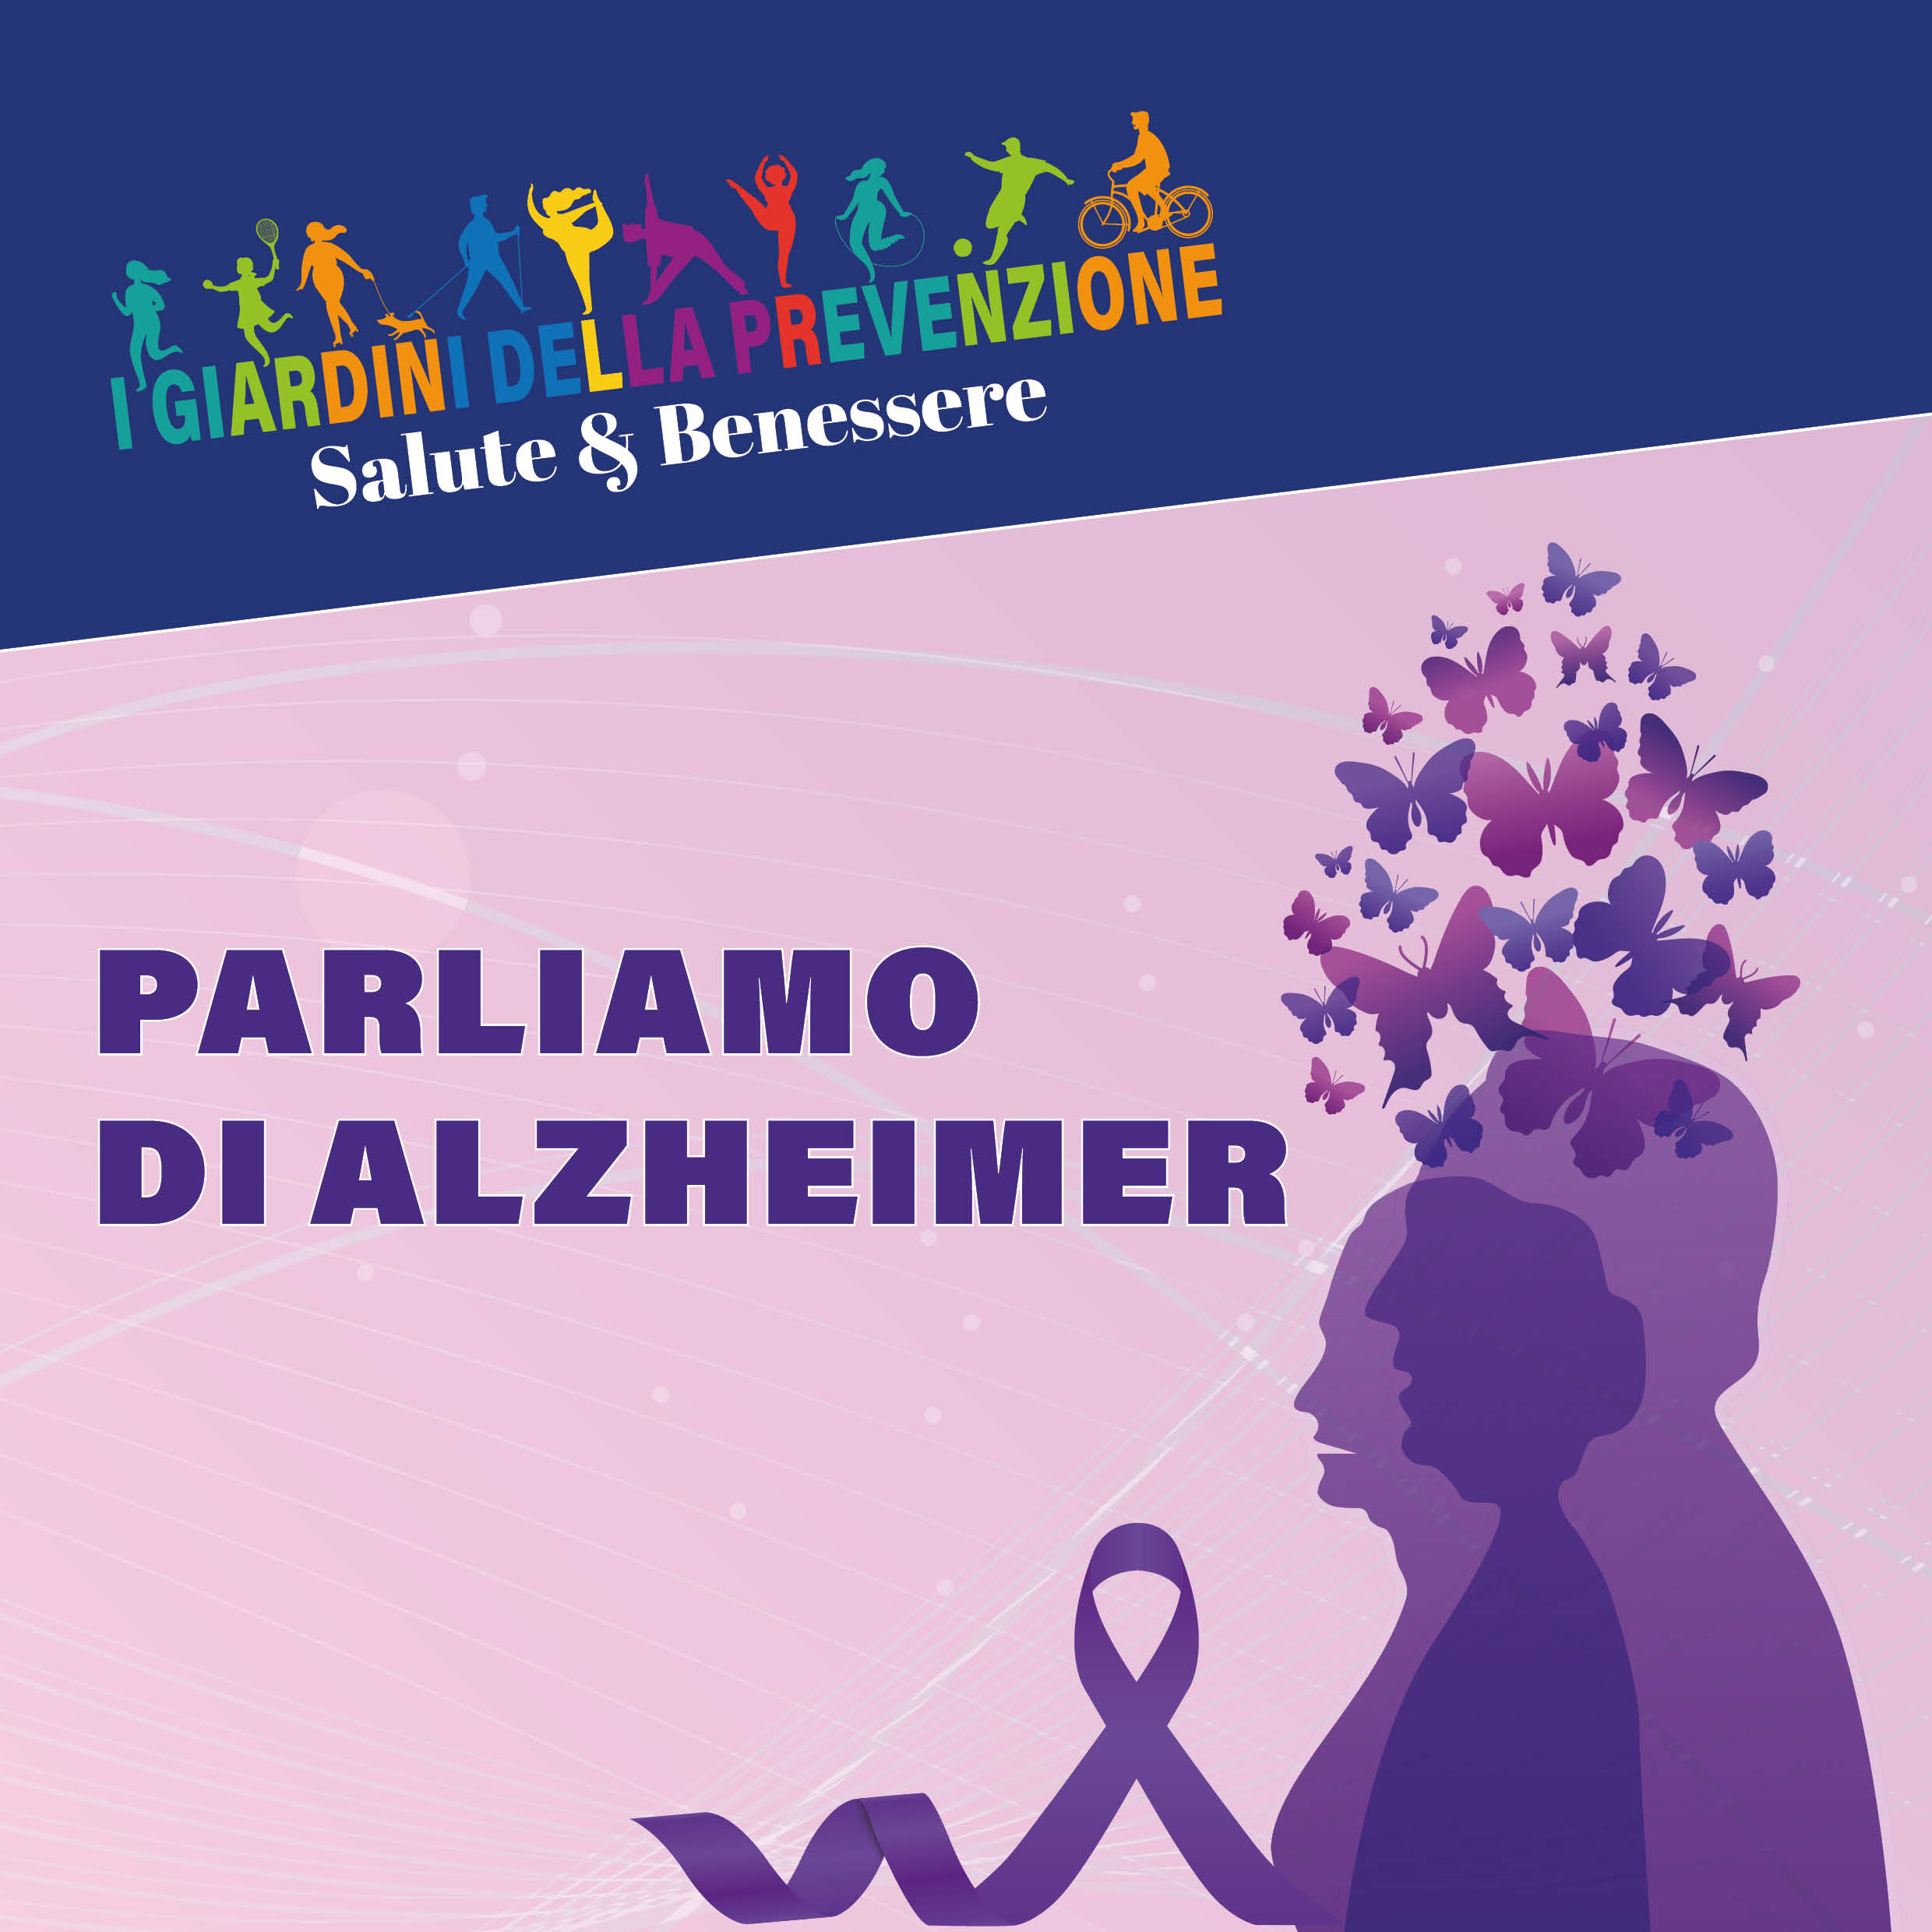 Verso "I giardini della prevenzione" Parliamo di Alzheimer: una serie di iniziative in tema di demenze che ci accompagneranno al grande evento regionale per la promozione della salute